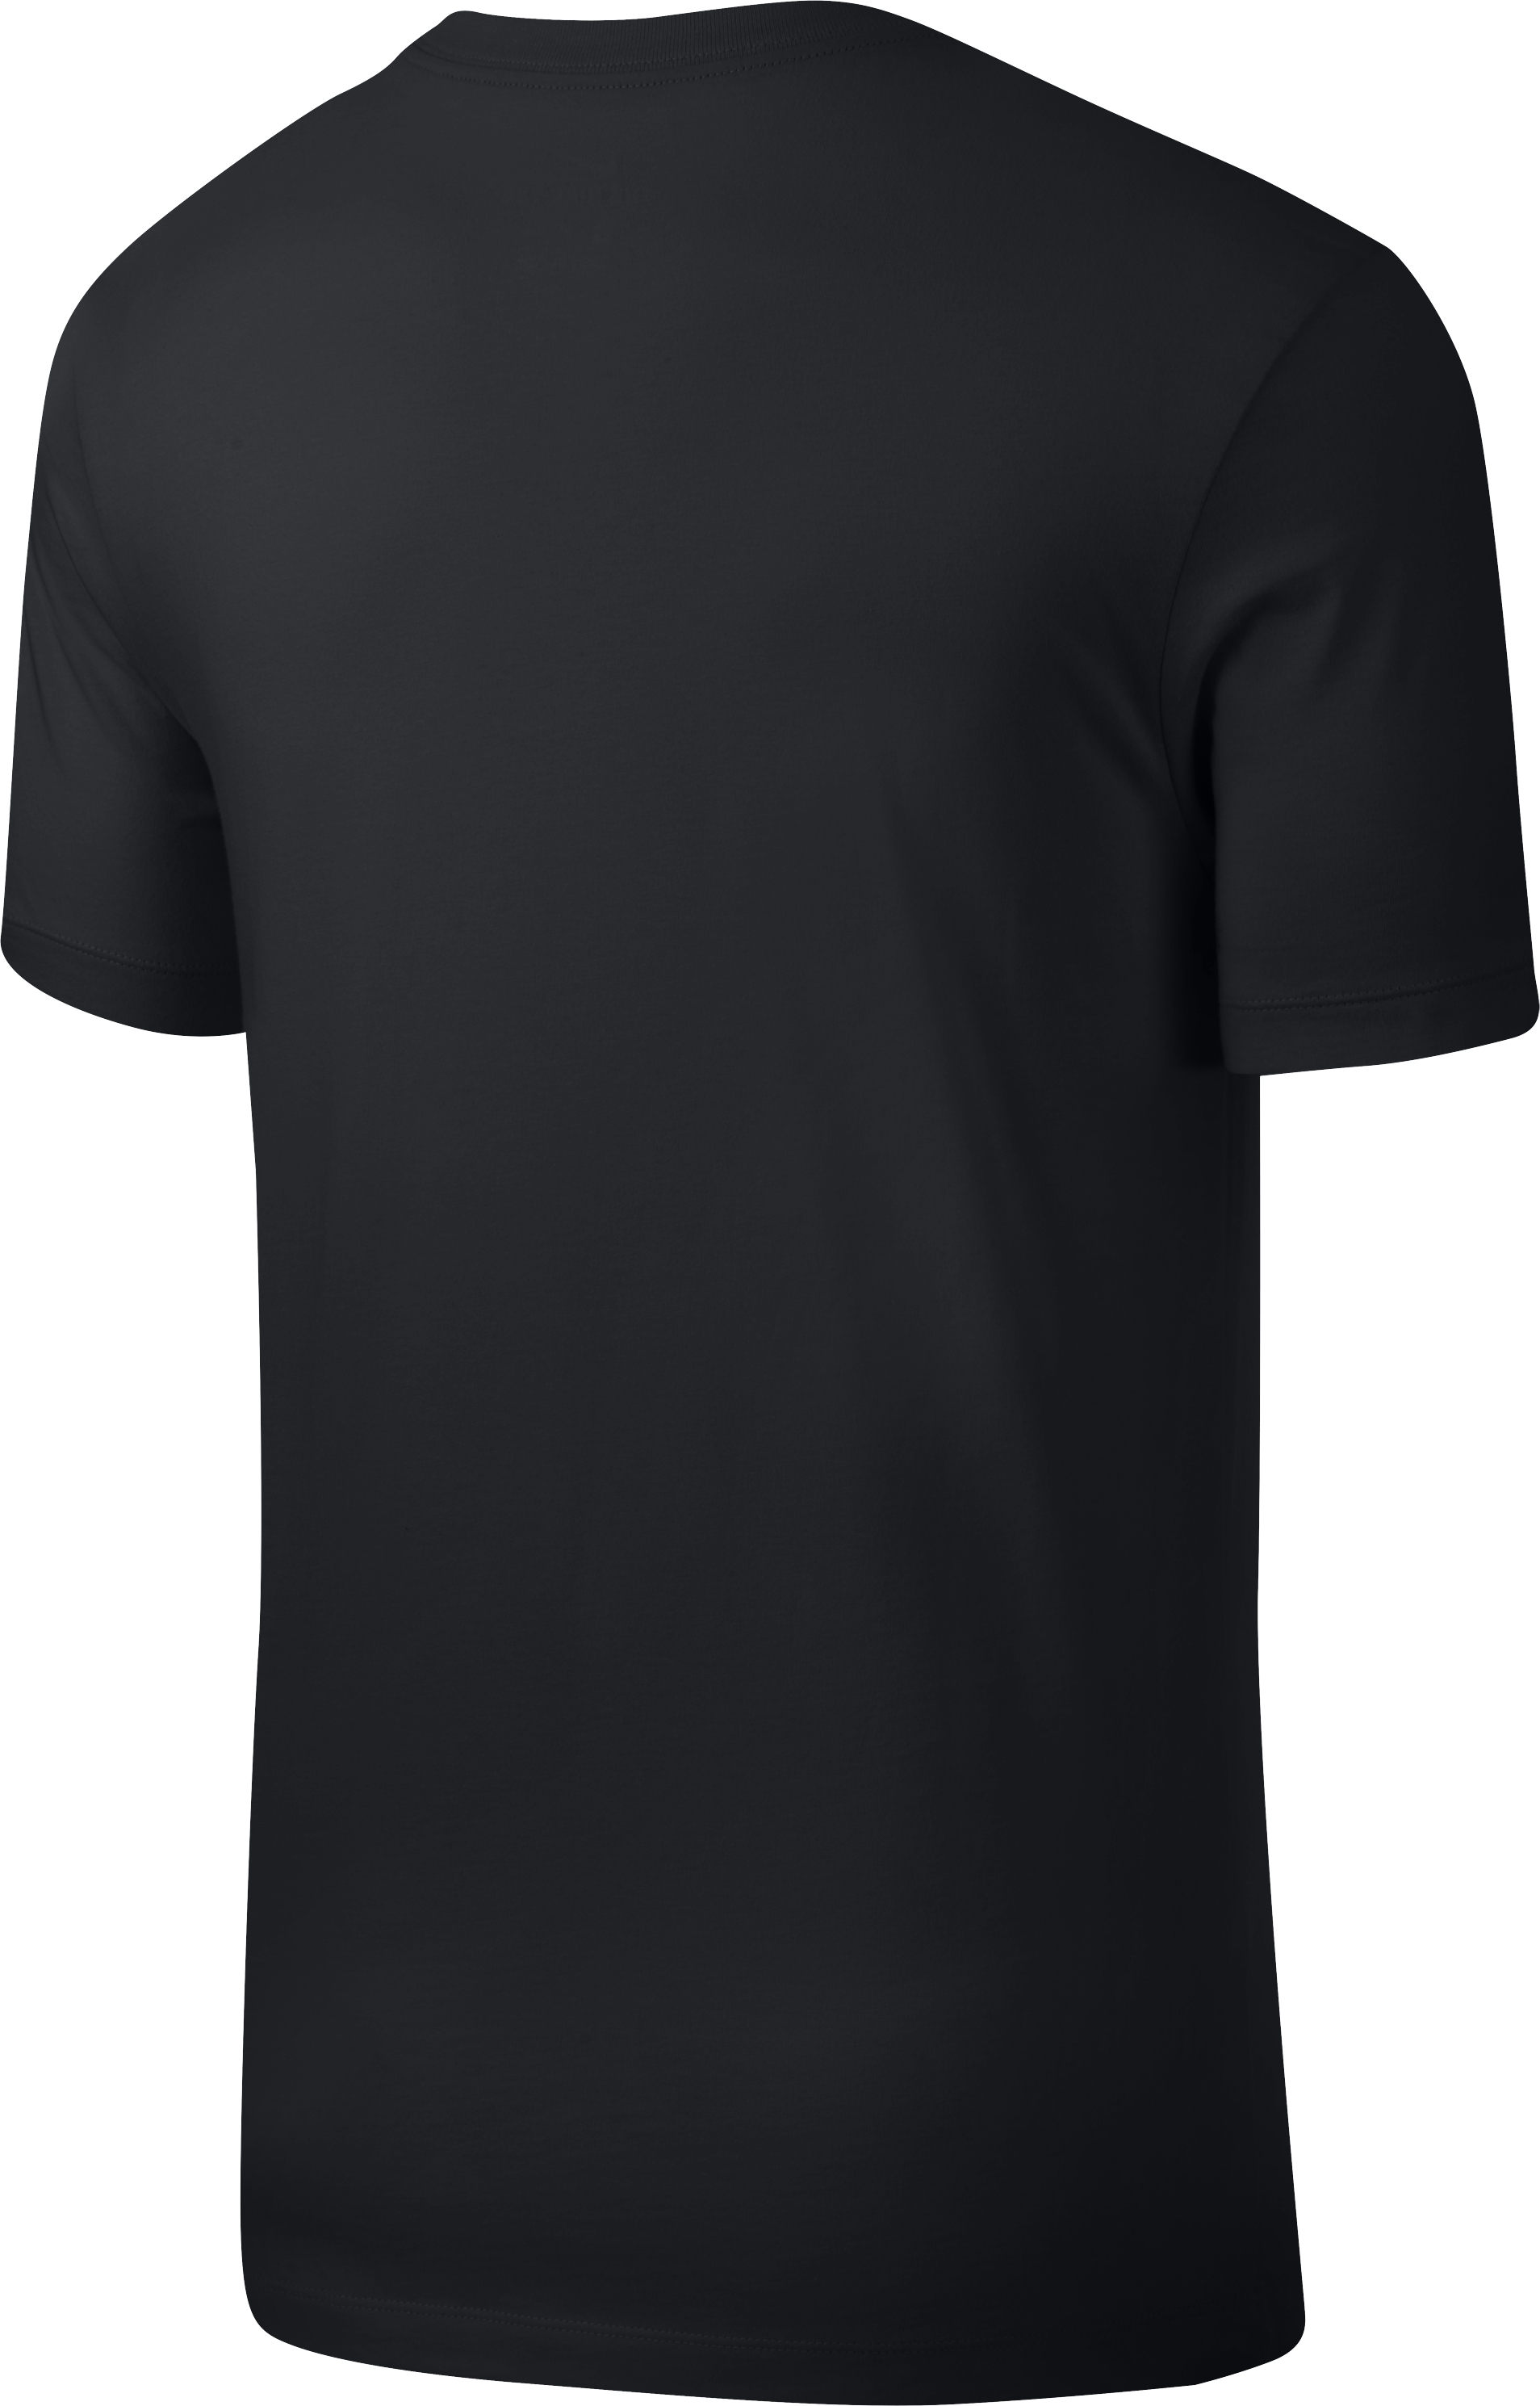 NIKE T-Shirt 10519558